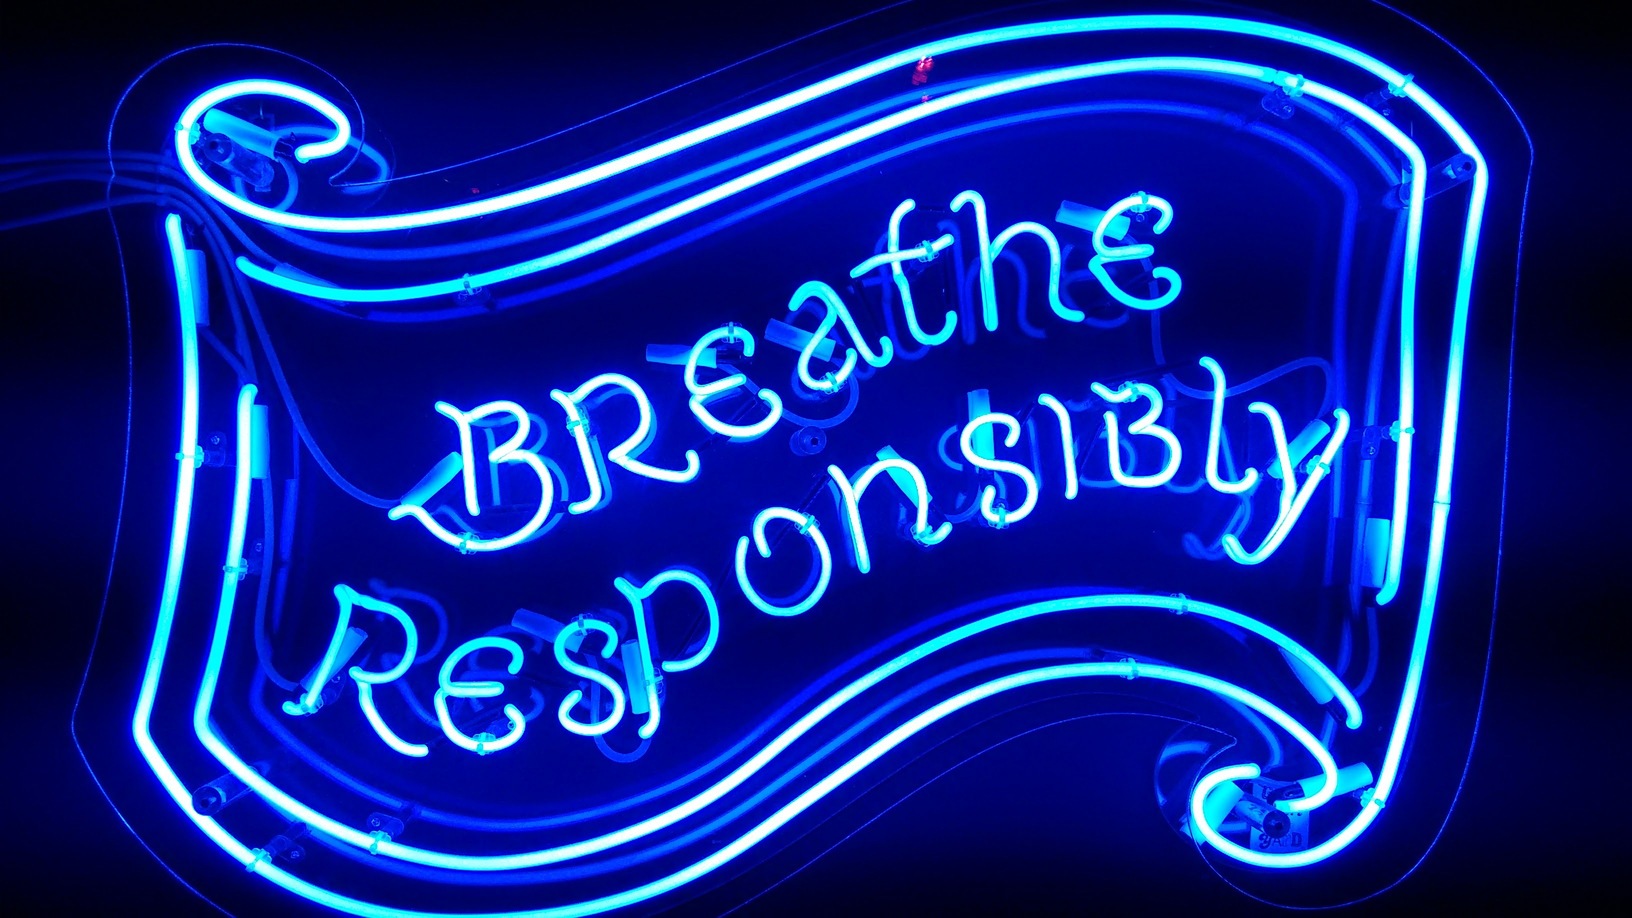 "Respire com responsabilidade"